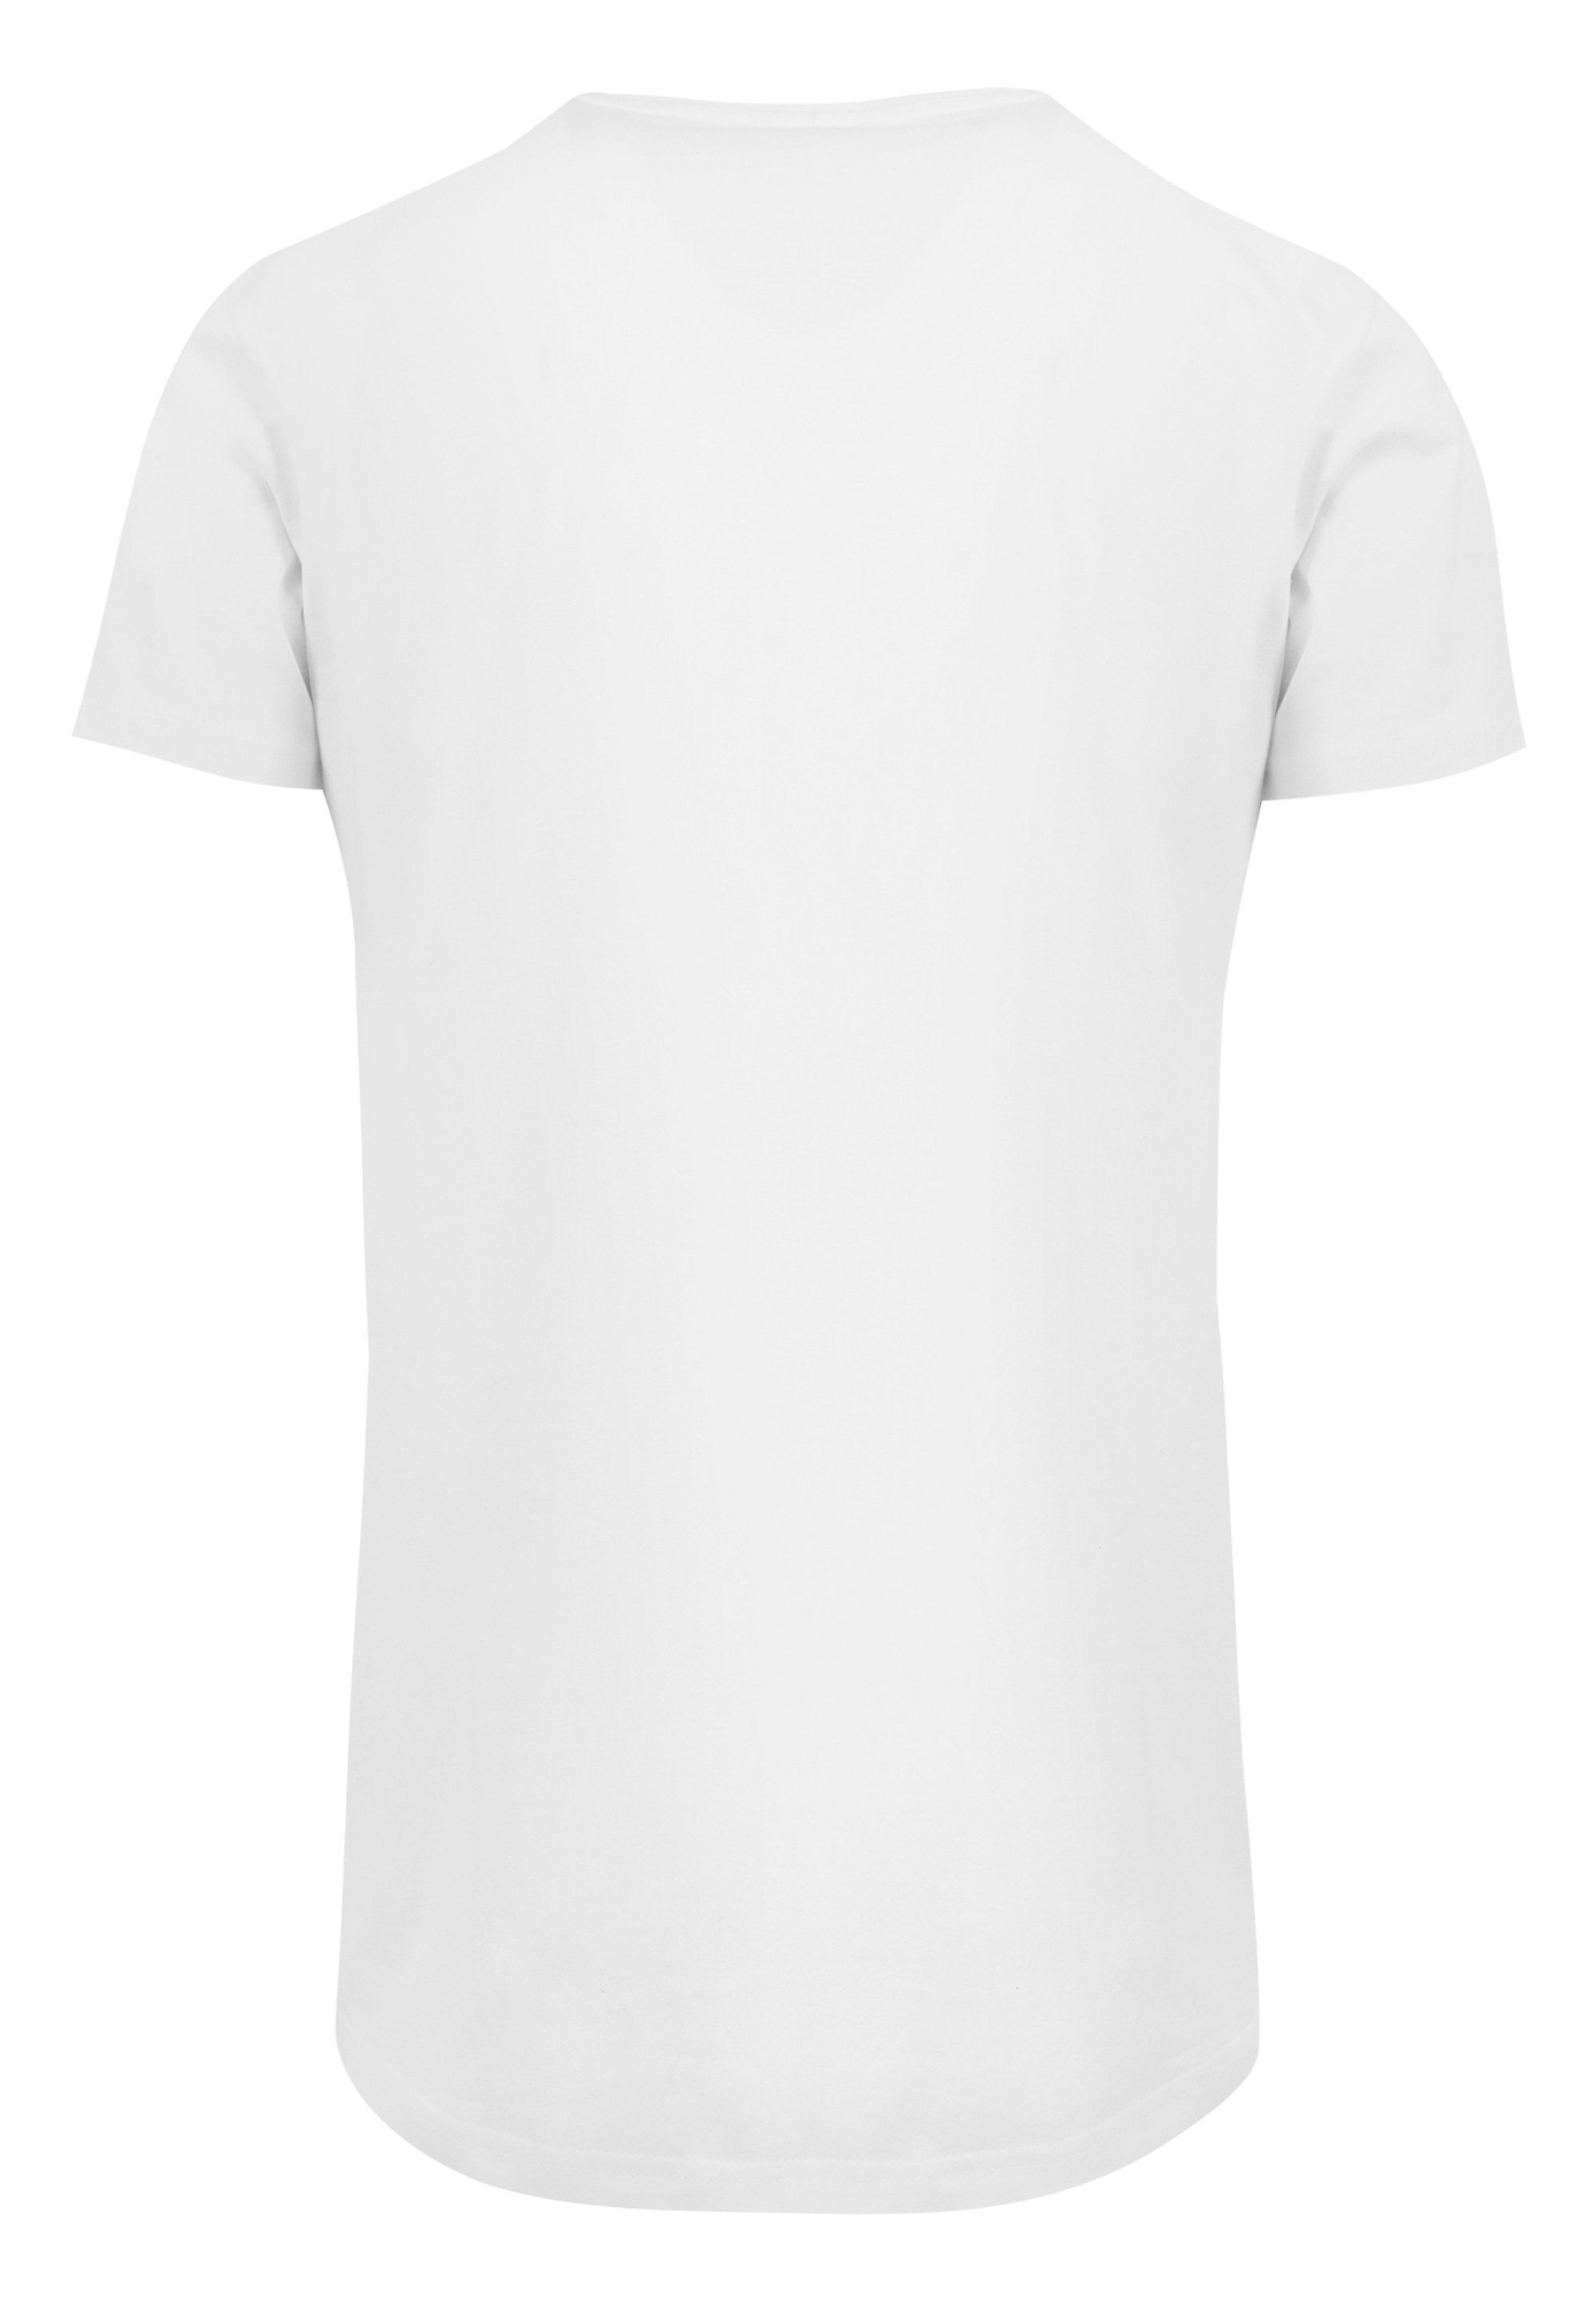 Merch,Lang,Longshirt,Bedruckt Herren,Premium T-Shirt Long T-Shirt F4NT4STIC F4NT4STIC Cut